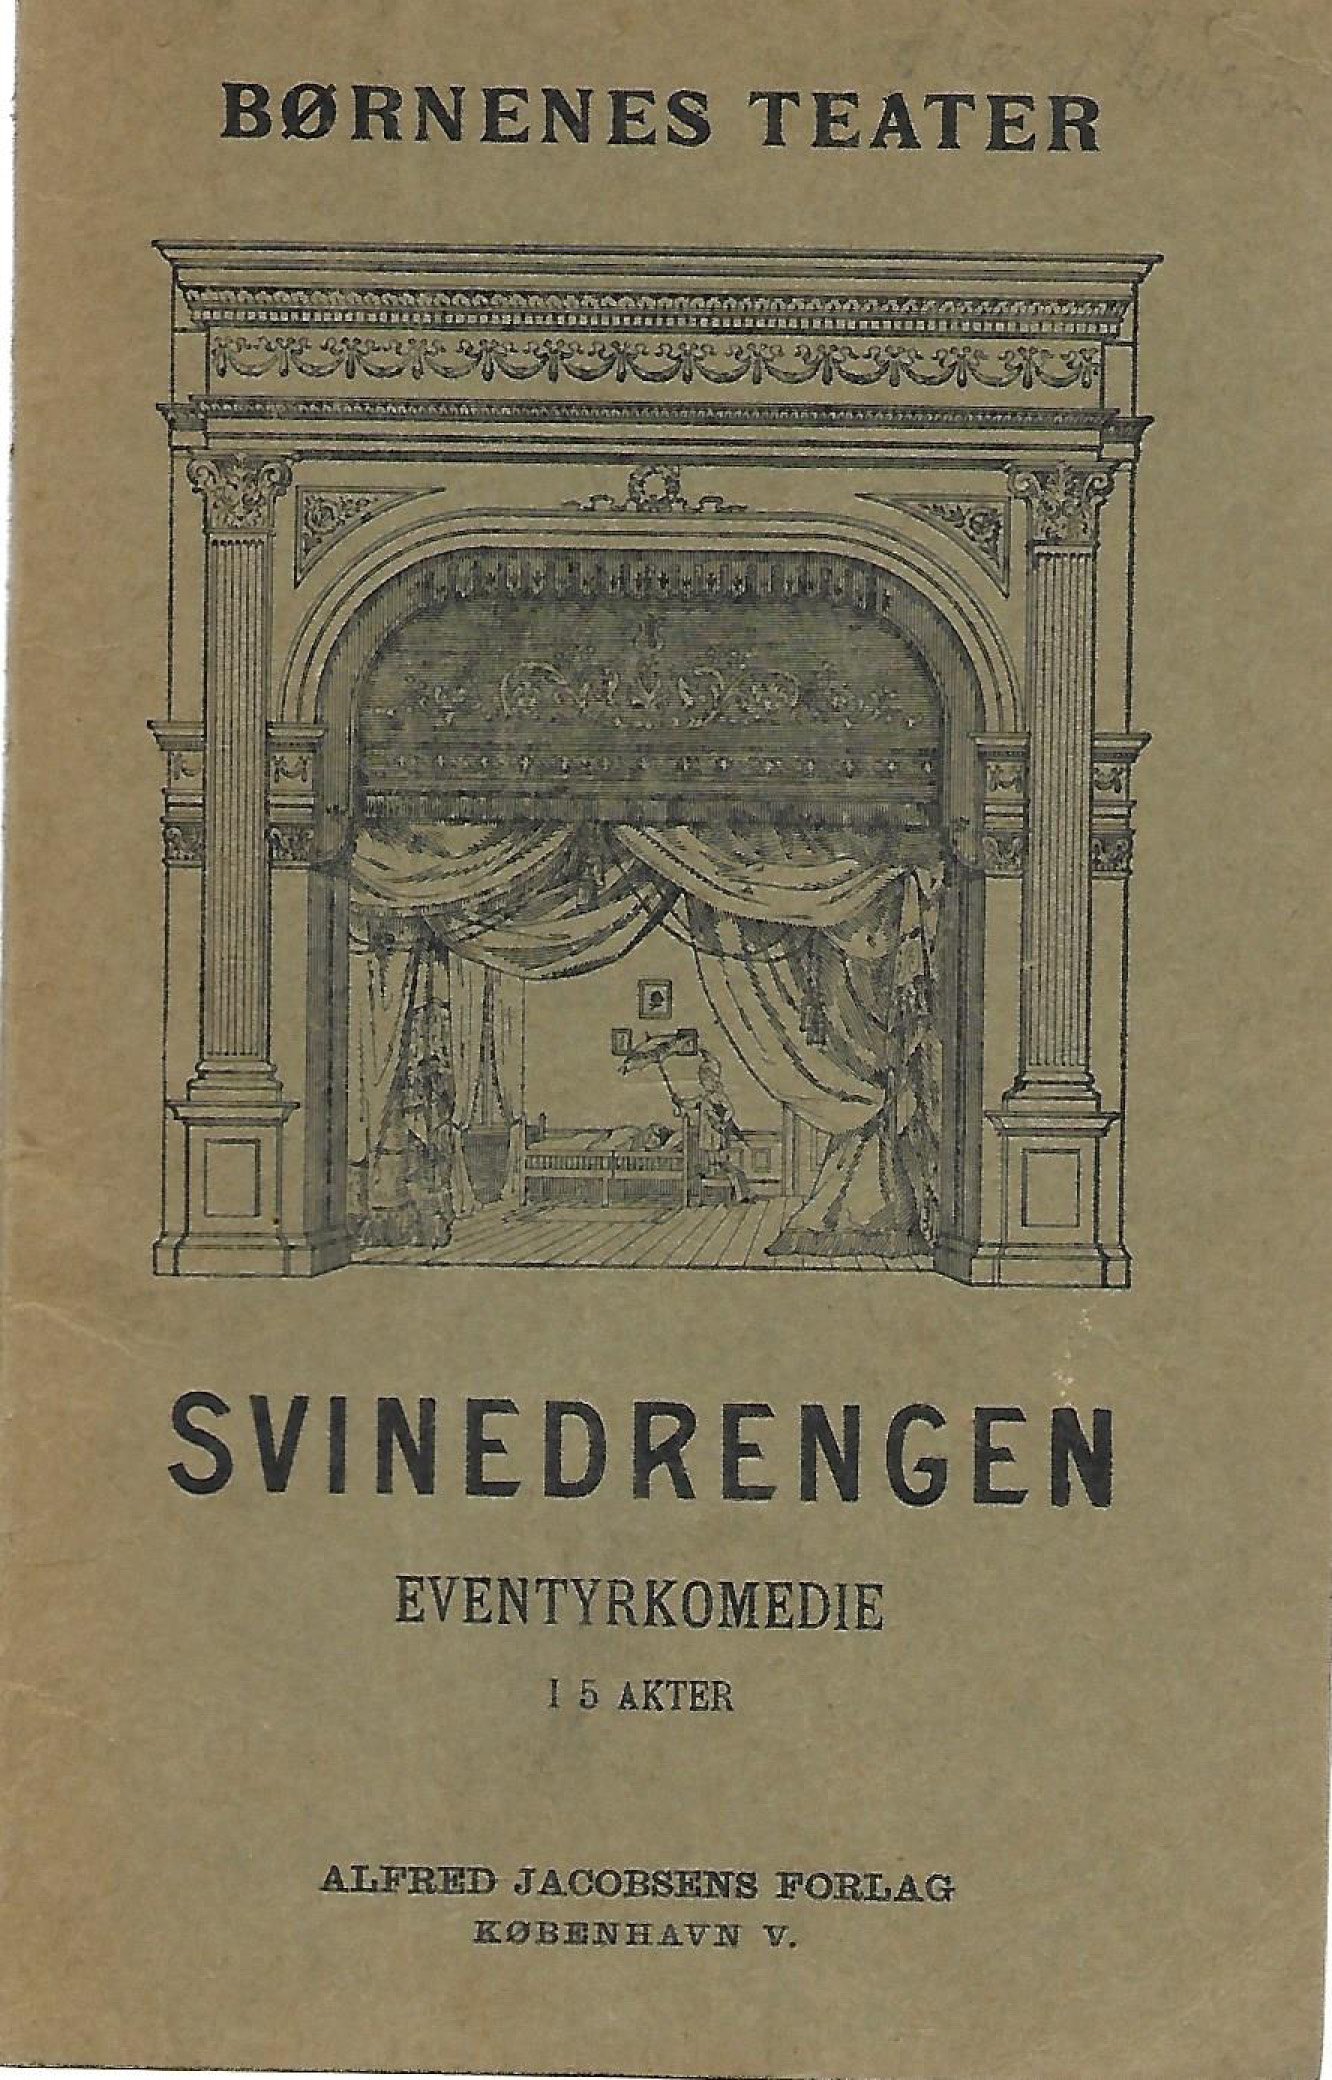 Svinedrengen - Eventyrkomedie for Børnenes Teater i 5 akter 1908-1